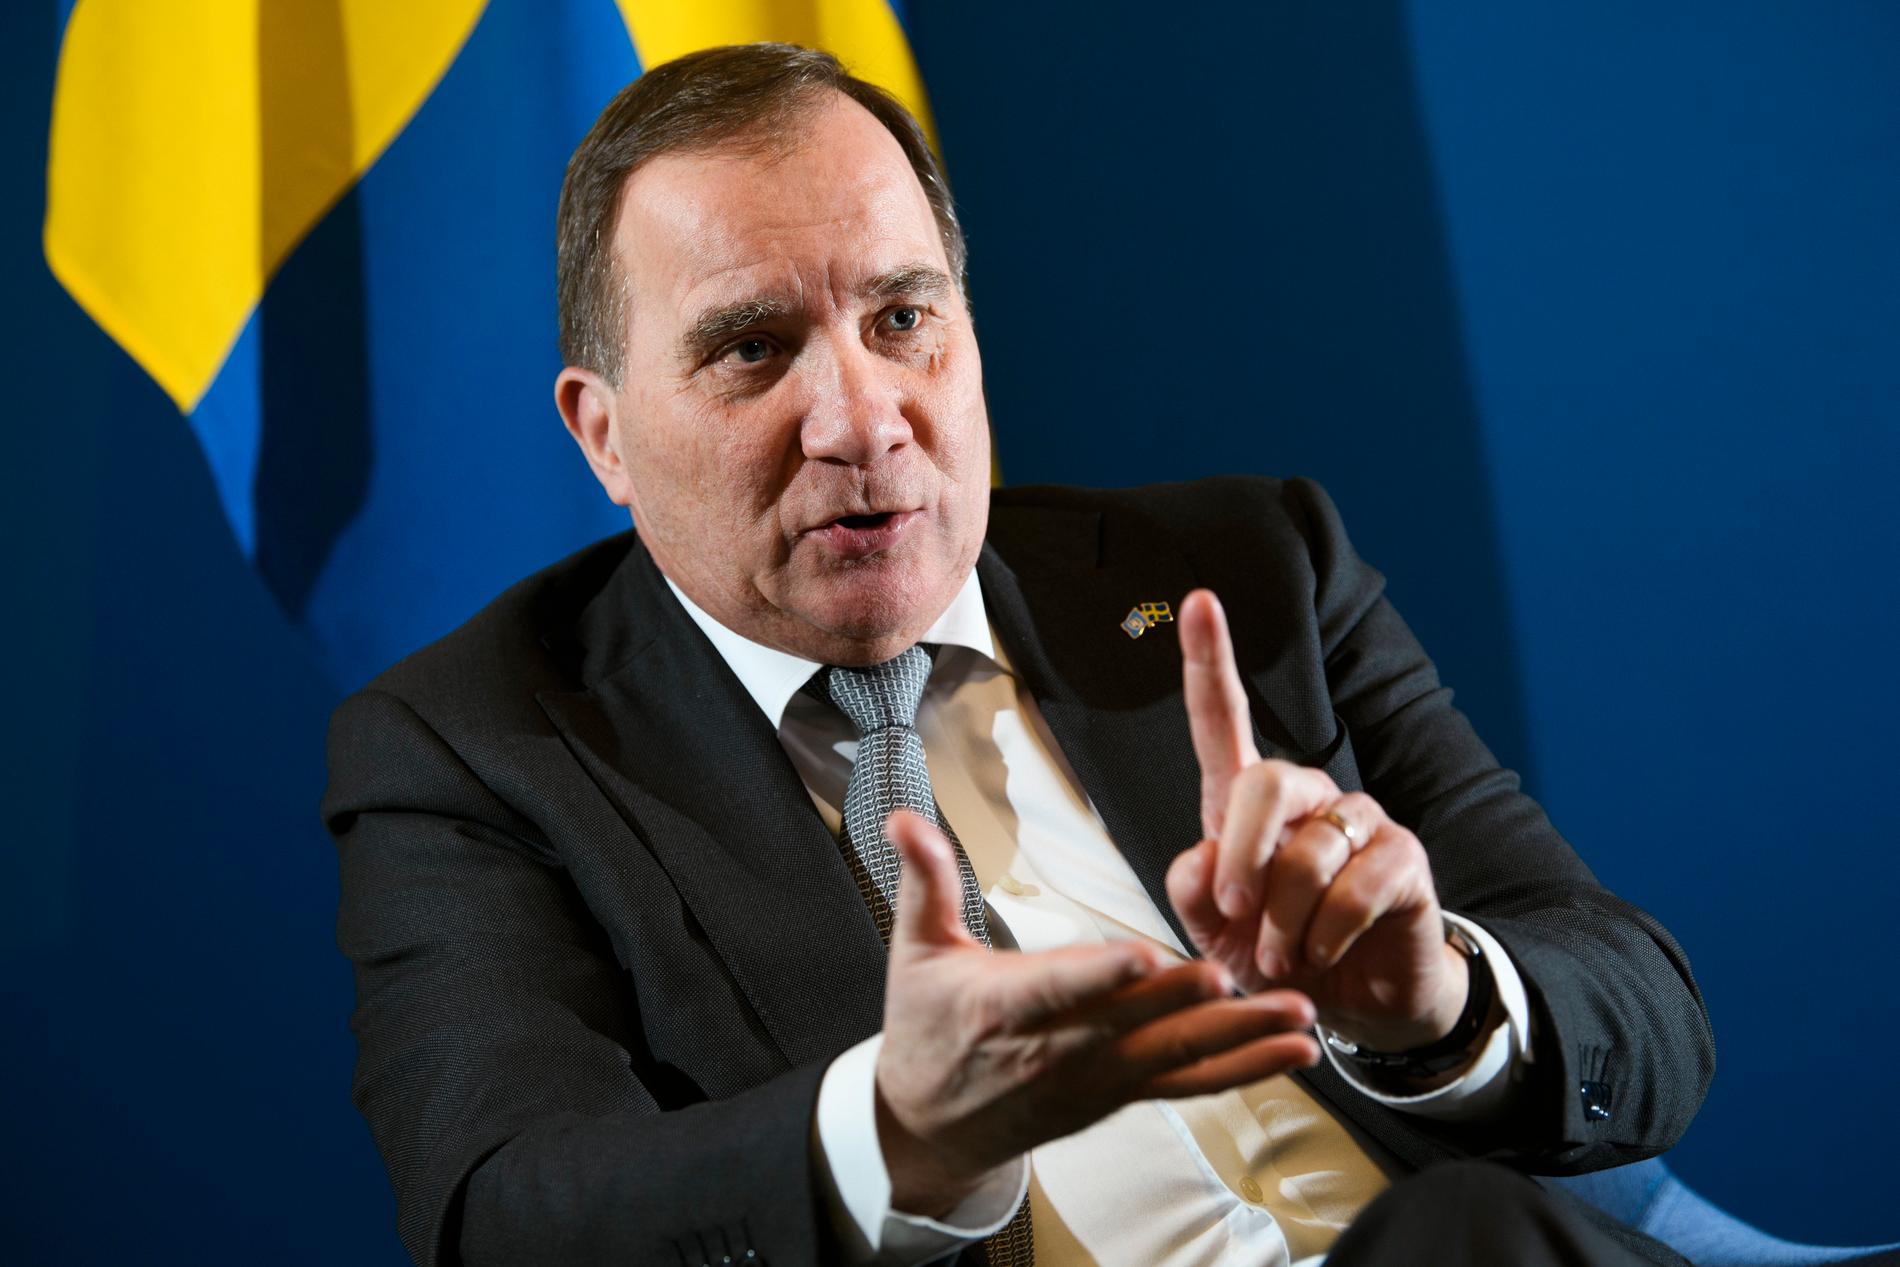 Statsminister Stefan Löfven har inget emot att fortsätta januarisamarbetet med C, L och MP efter valet 2022, men säger att valresultatet avgör.